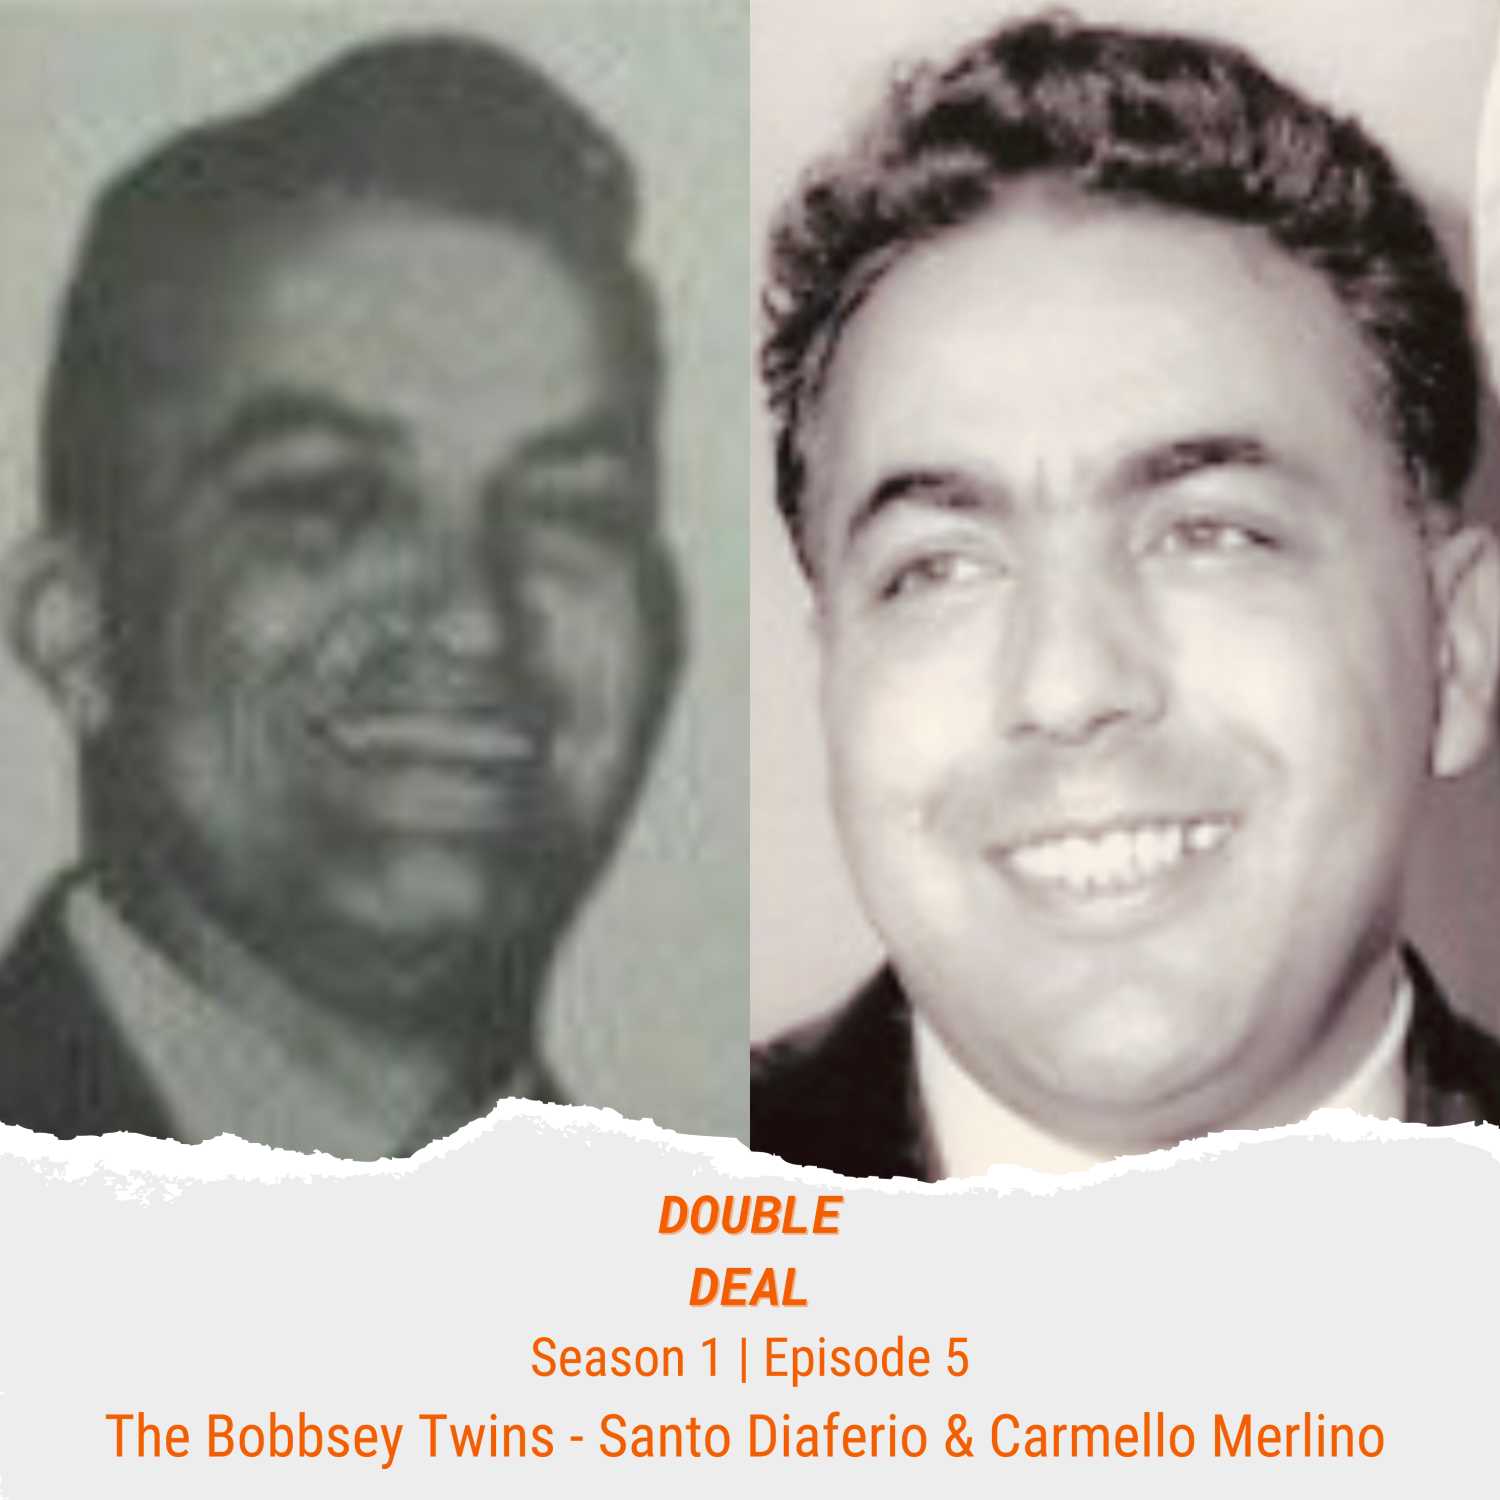 The Bobbsey Twins - Santo Diaferio & Carmello Merlino - The Early Days